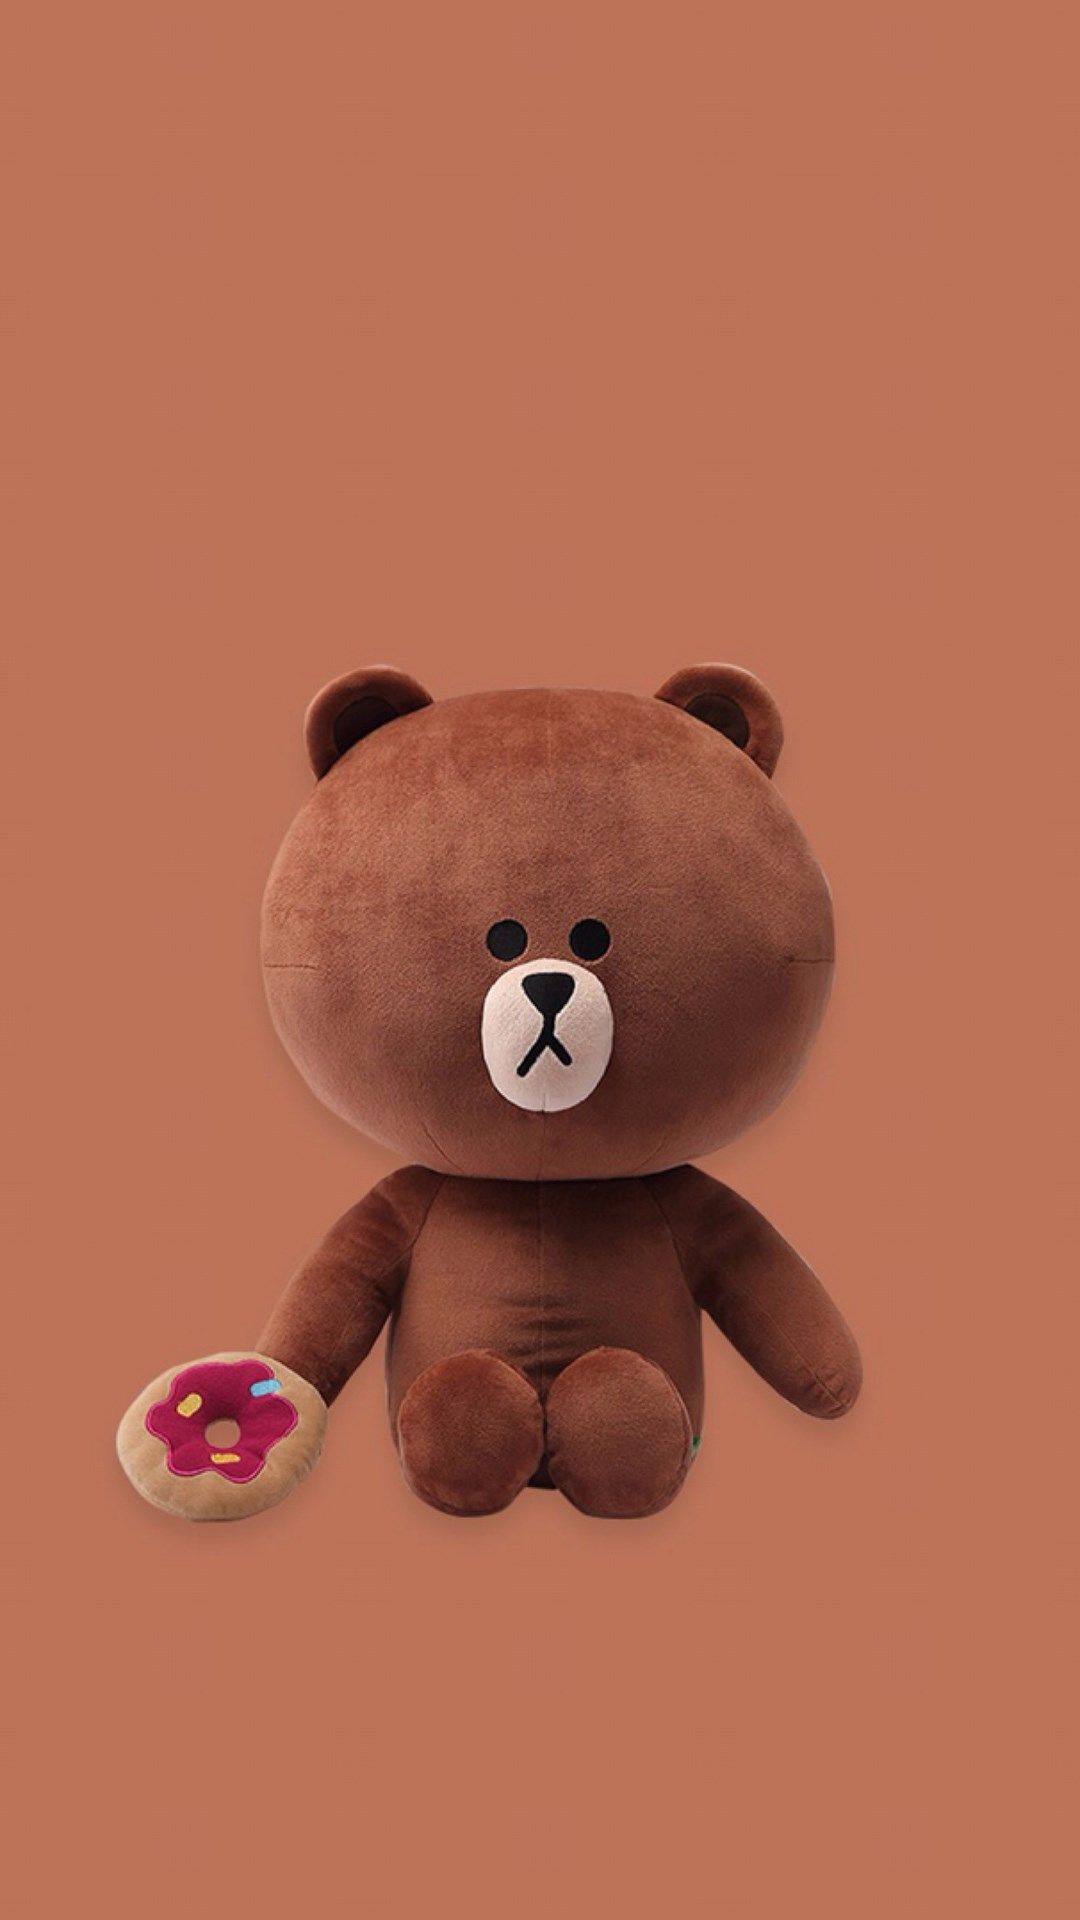 Best Bear iPhone 8 HD Wallpaper